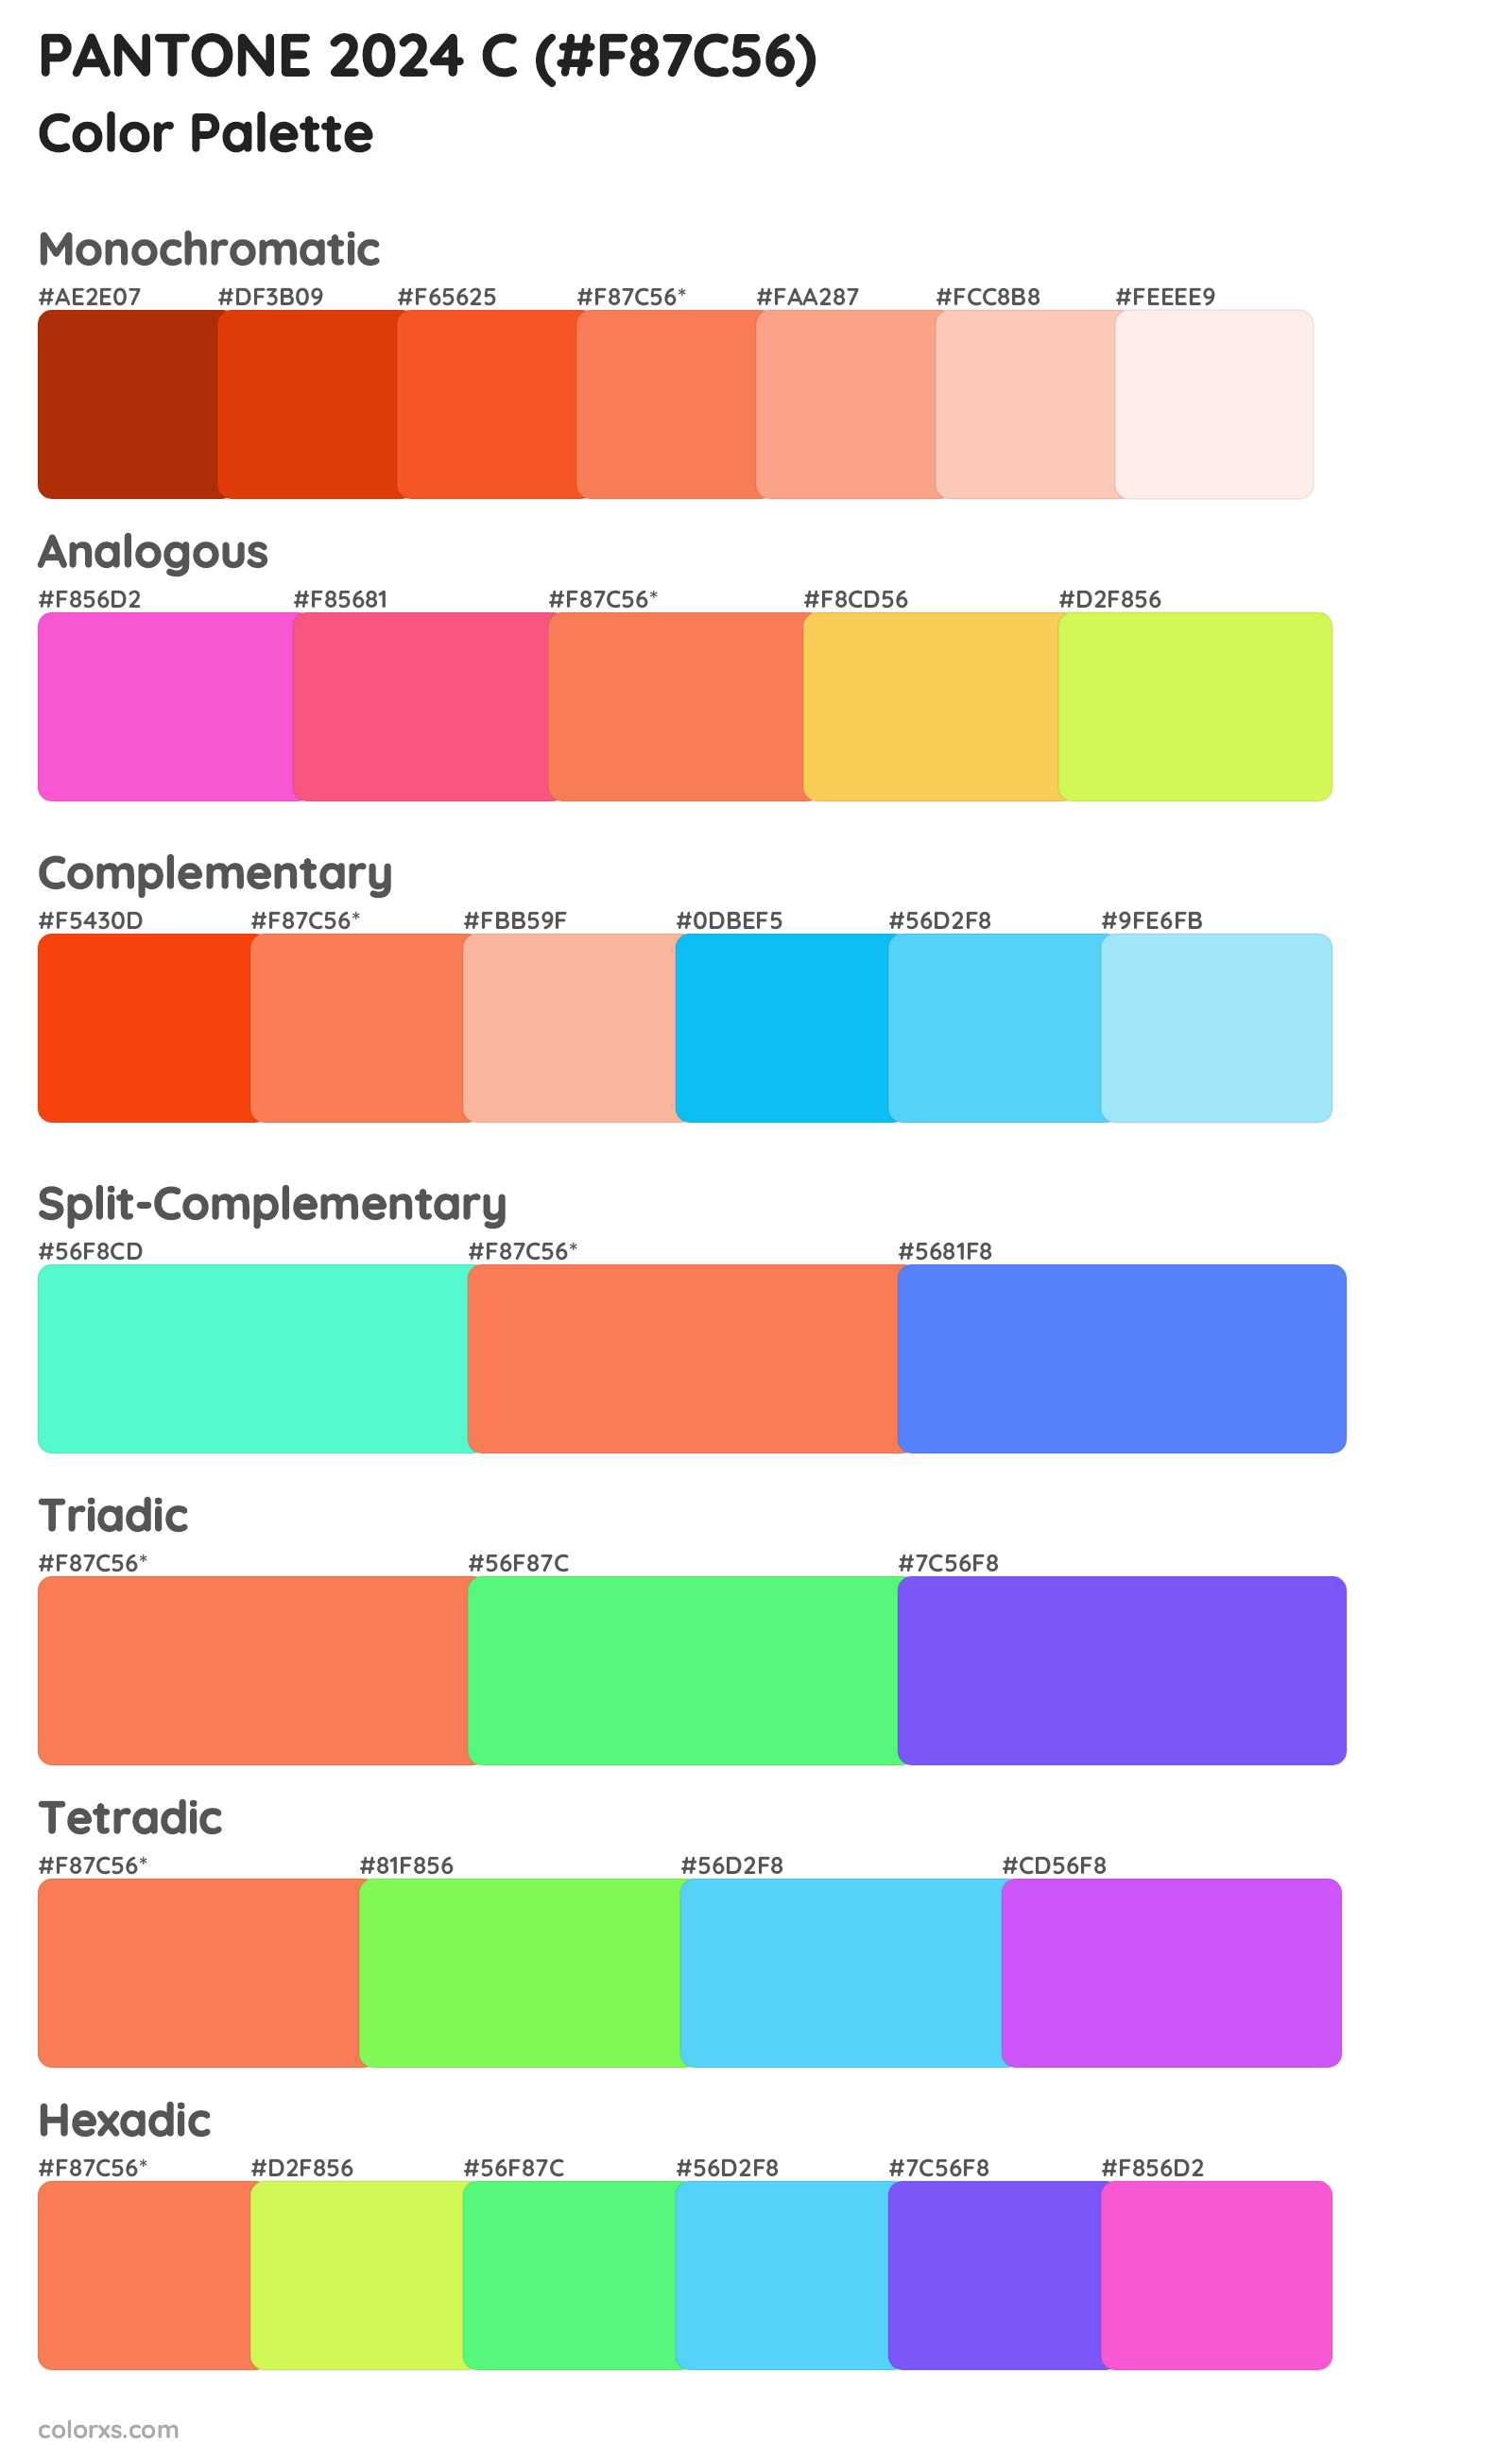 PANTONE 2024 C color palettes and color scheme combinations